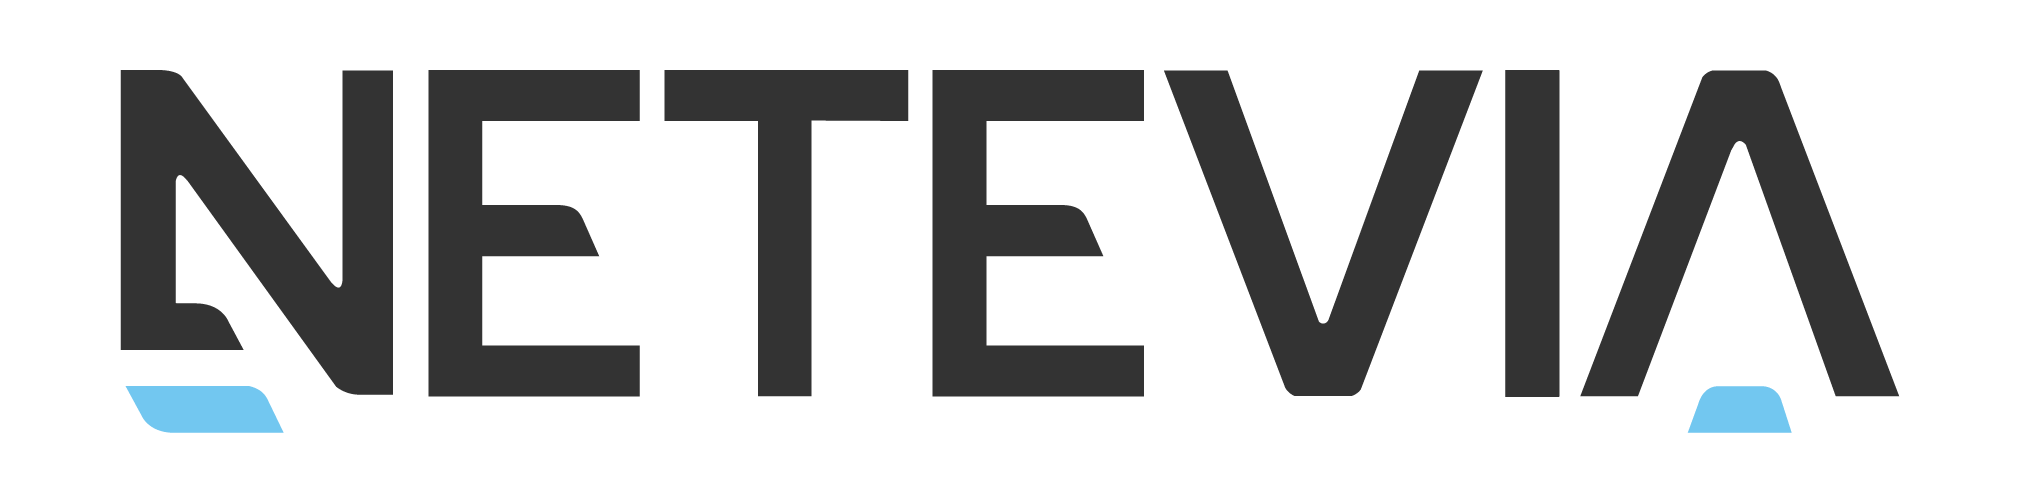 netevia-logo